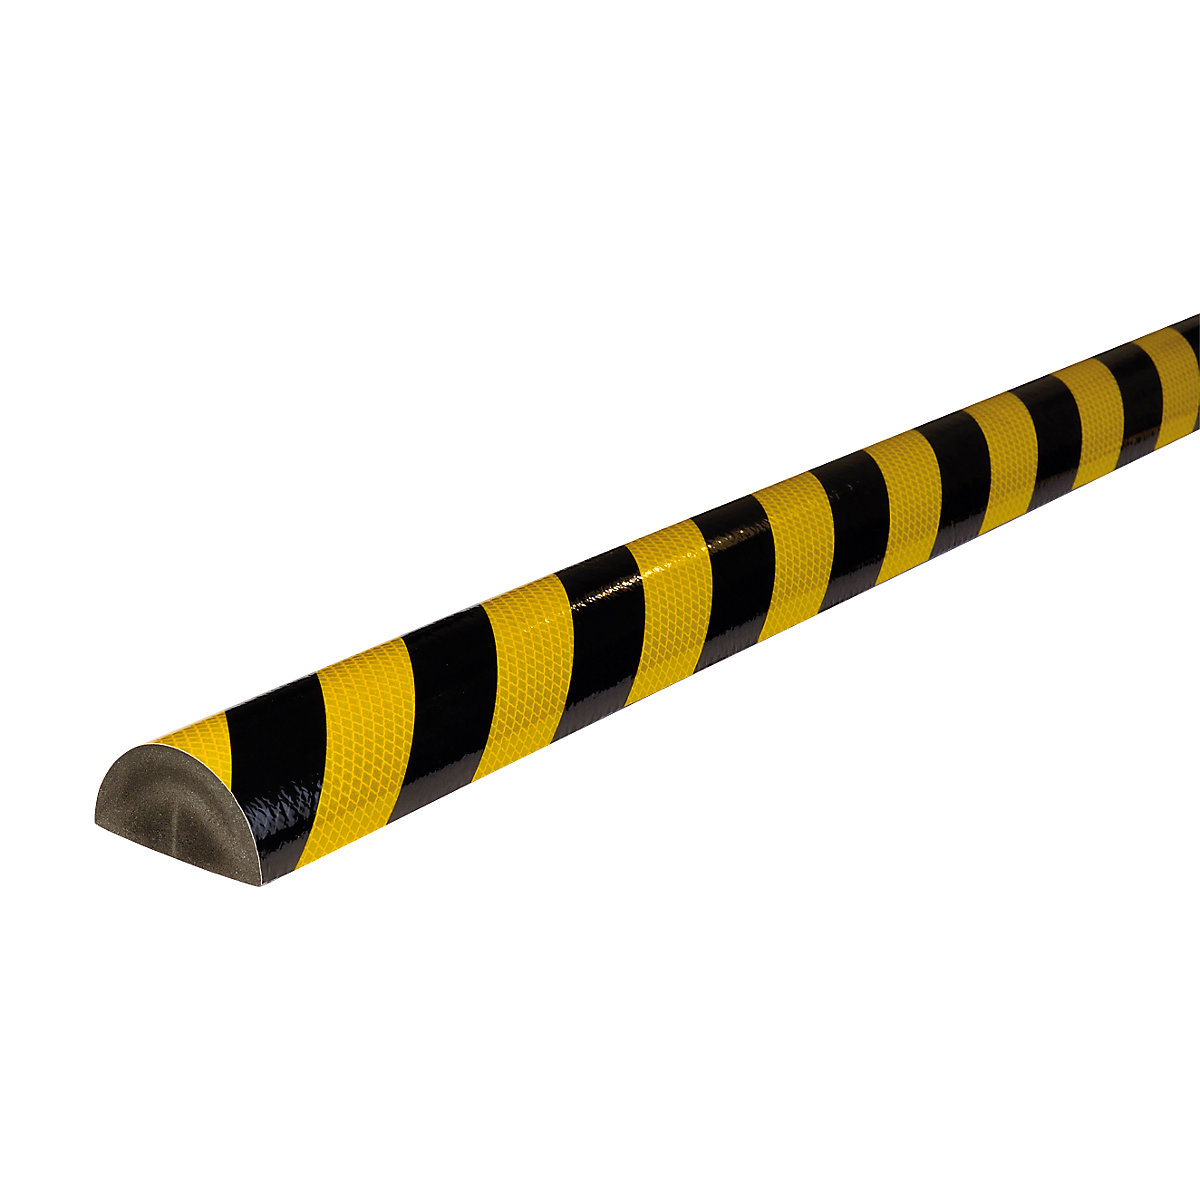 Protection des surfaces Knuffi® – SHG, type C+, pièce de 1 m, jaune/noir, réfléchissant